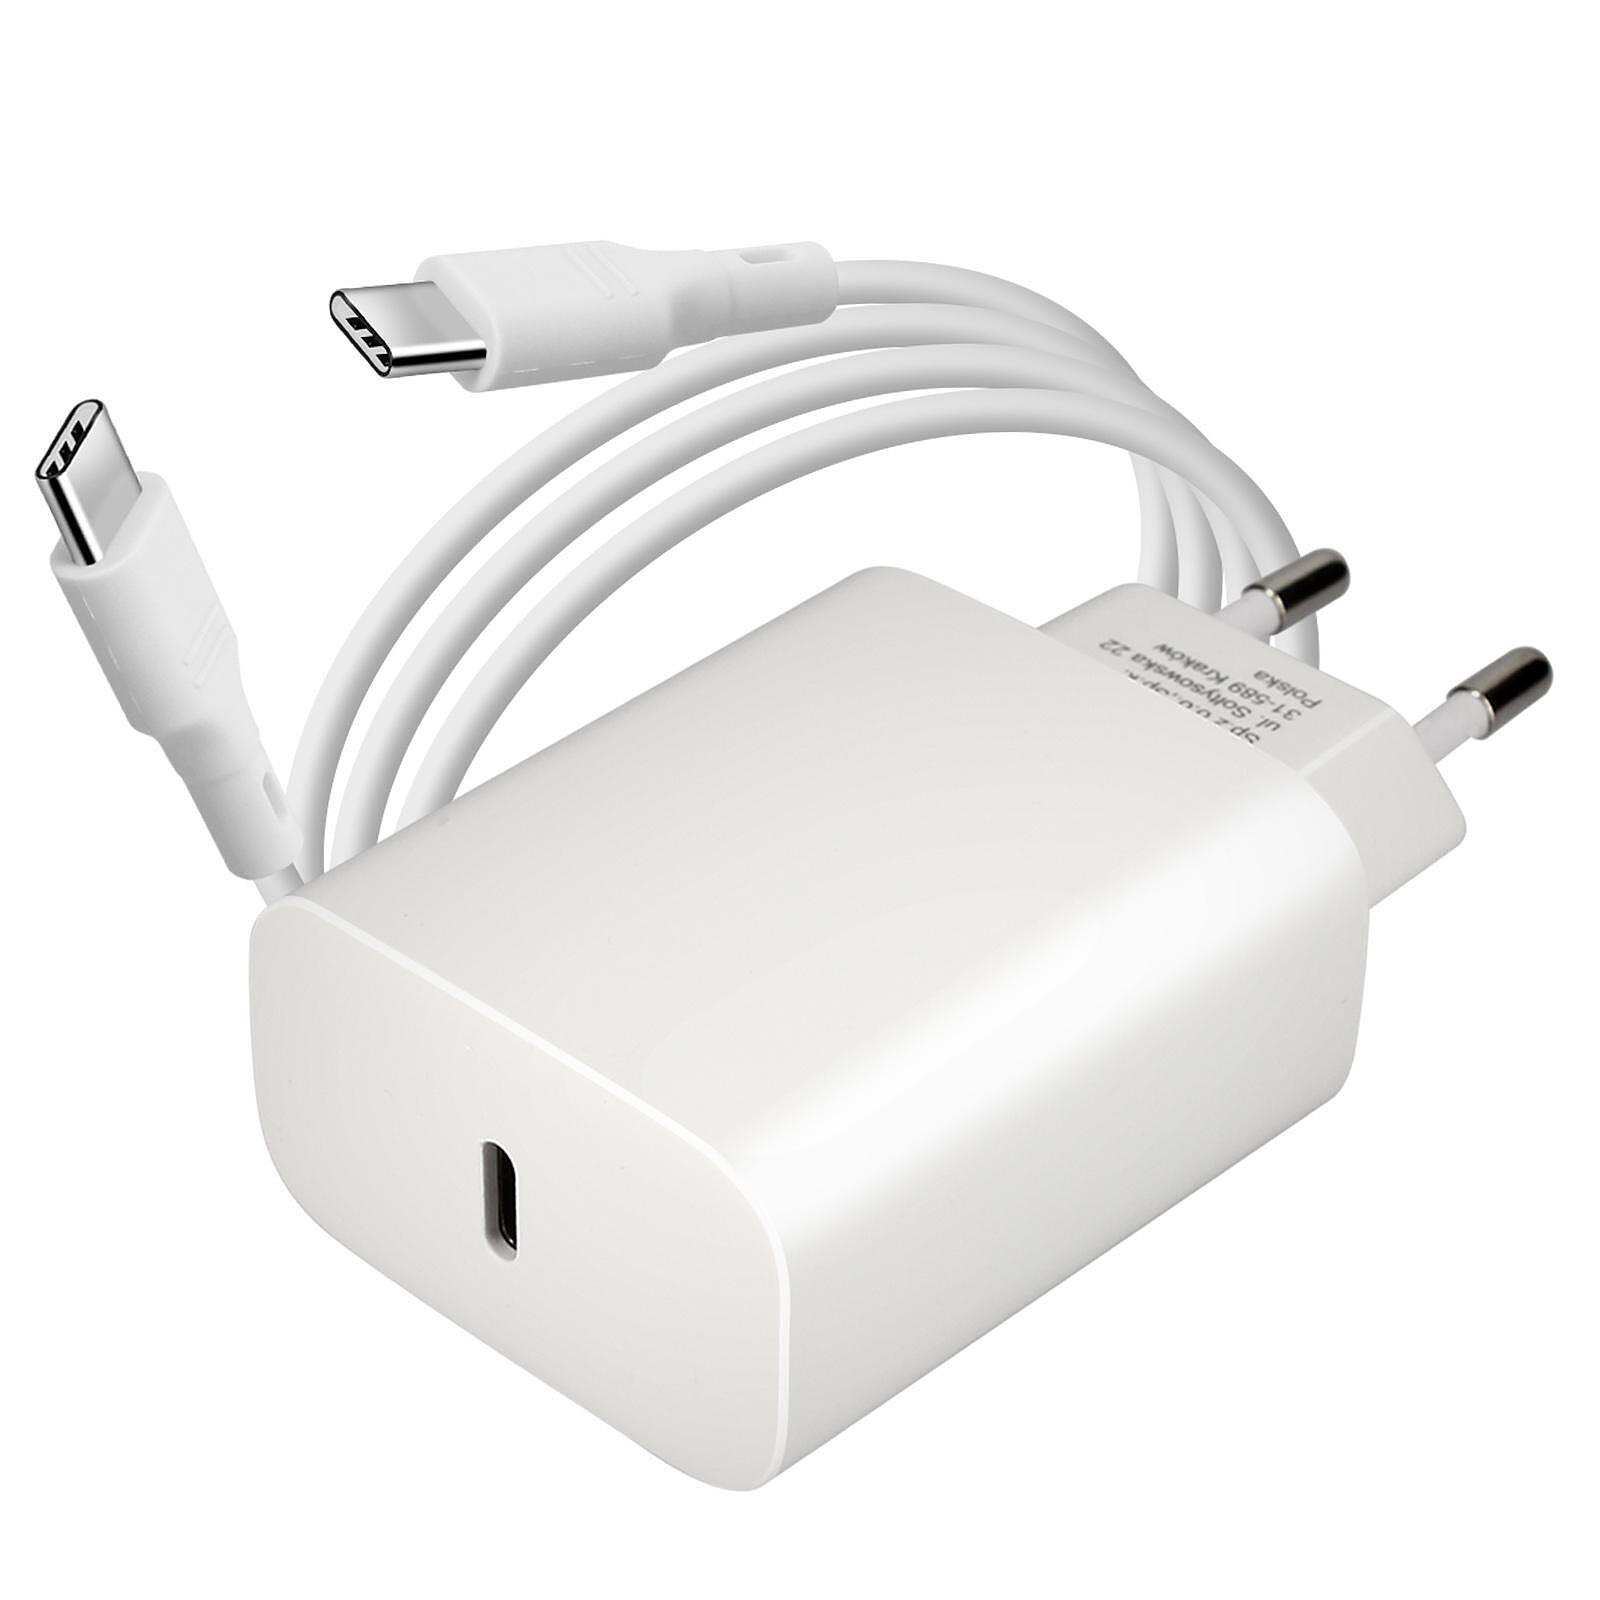 Câble chargeur magnétique USB C, Charge ultra rapide jusqu'à 60W